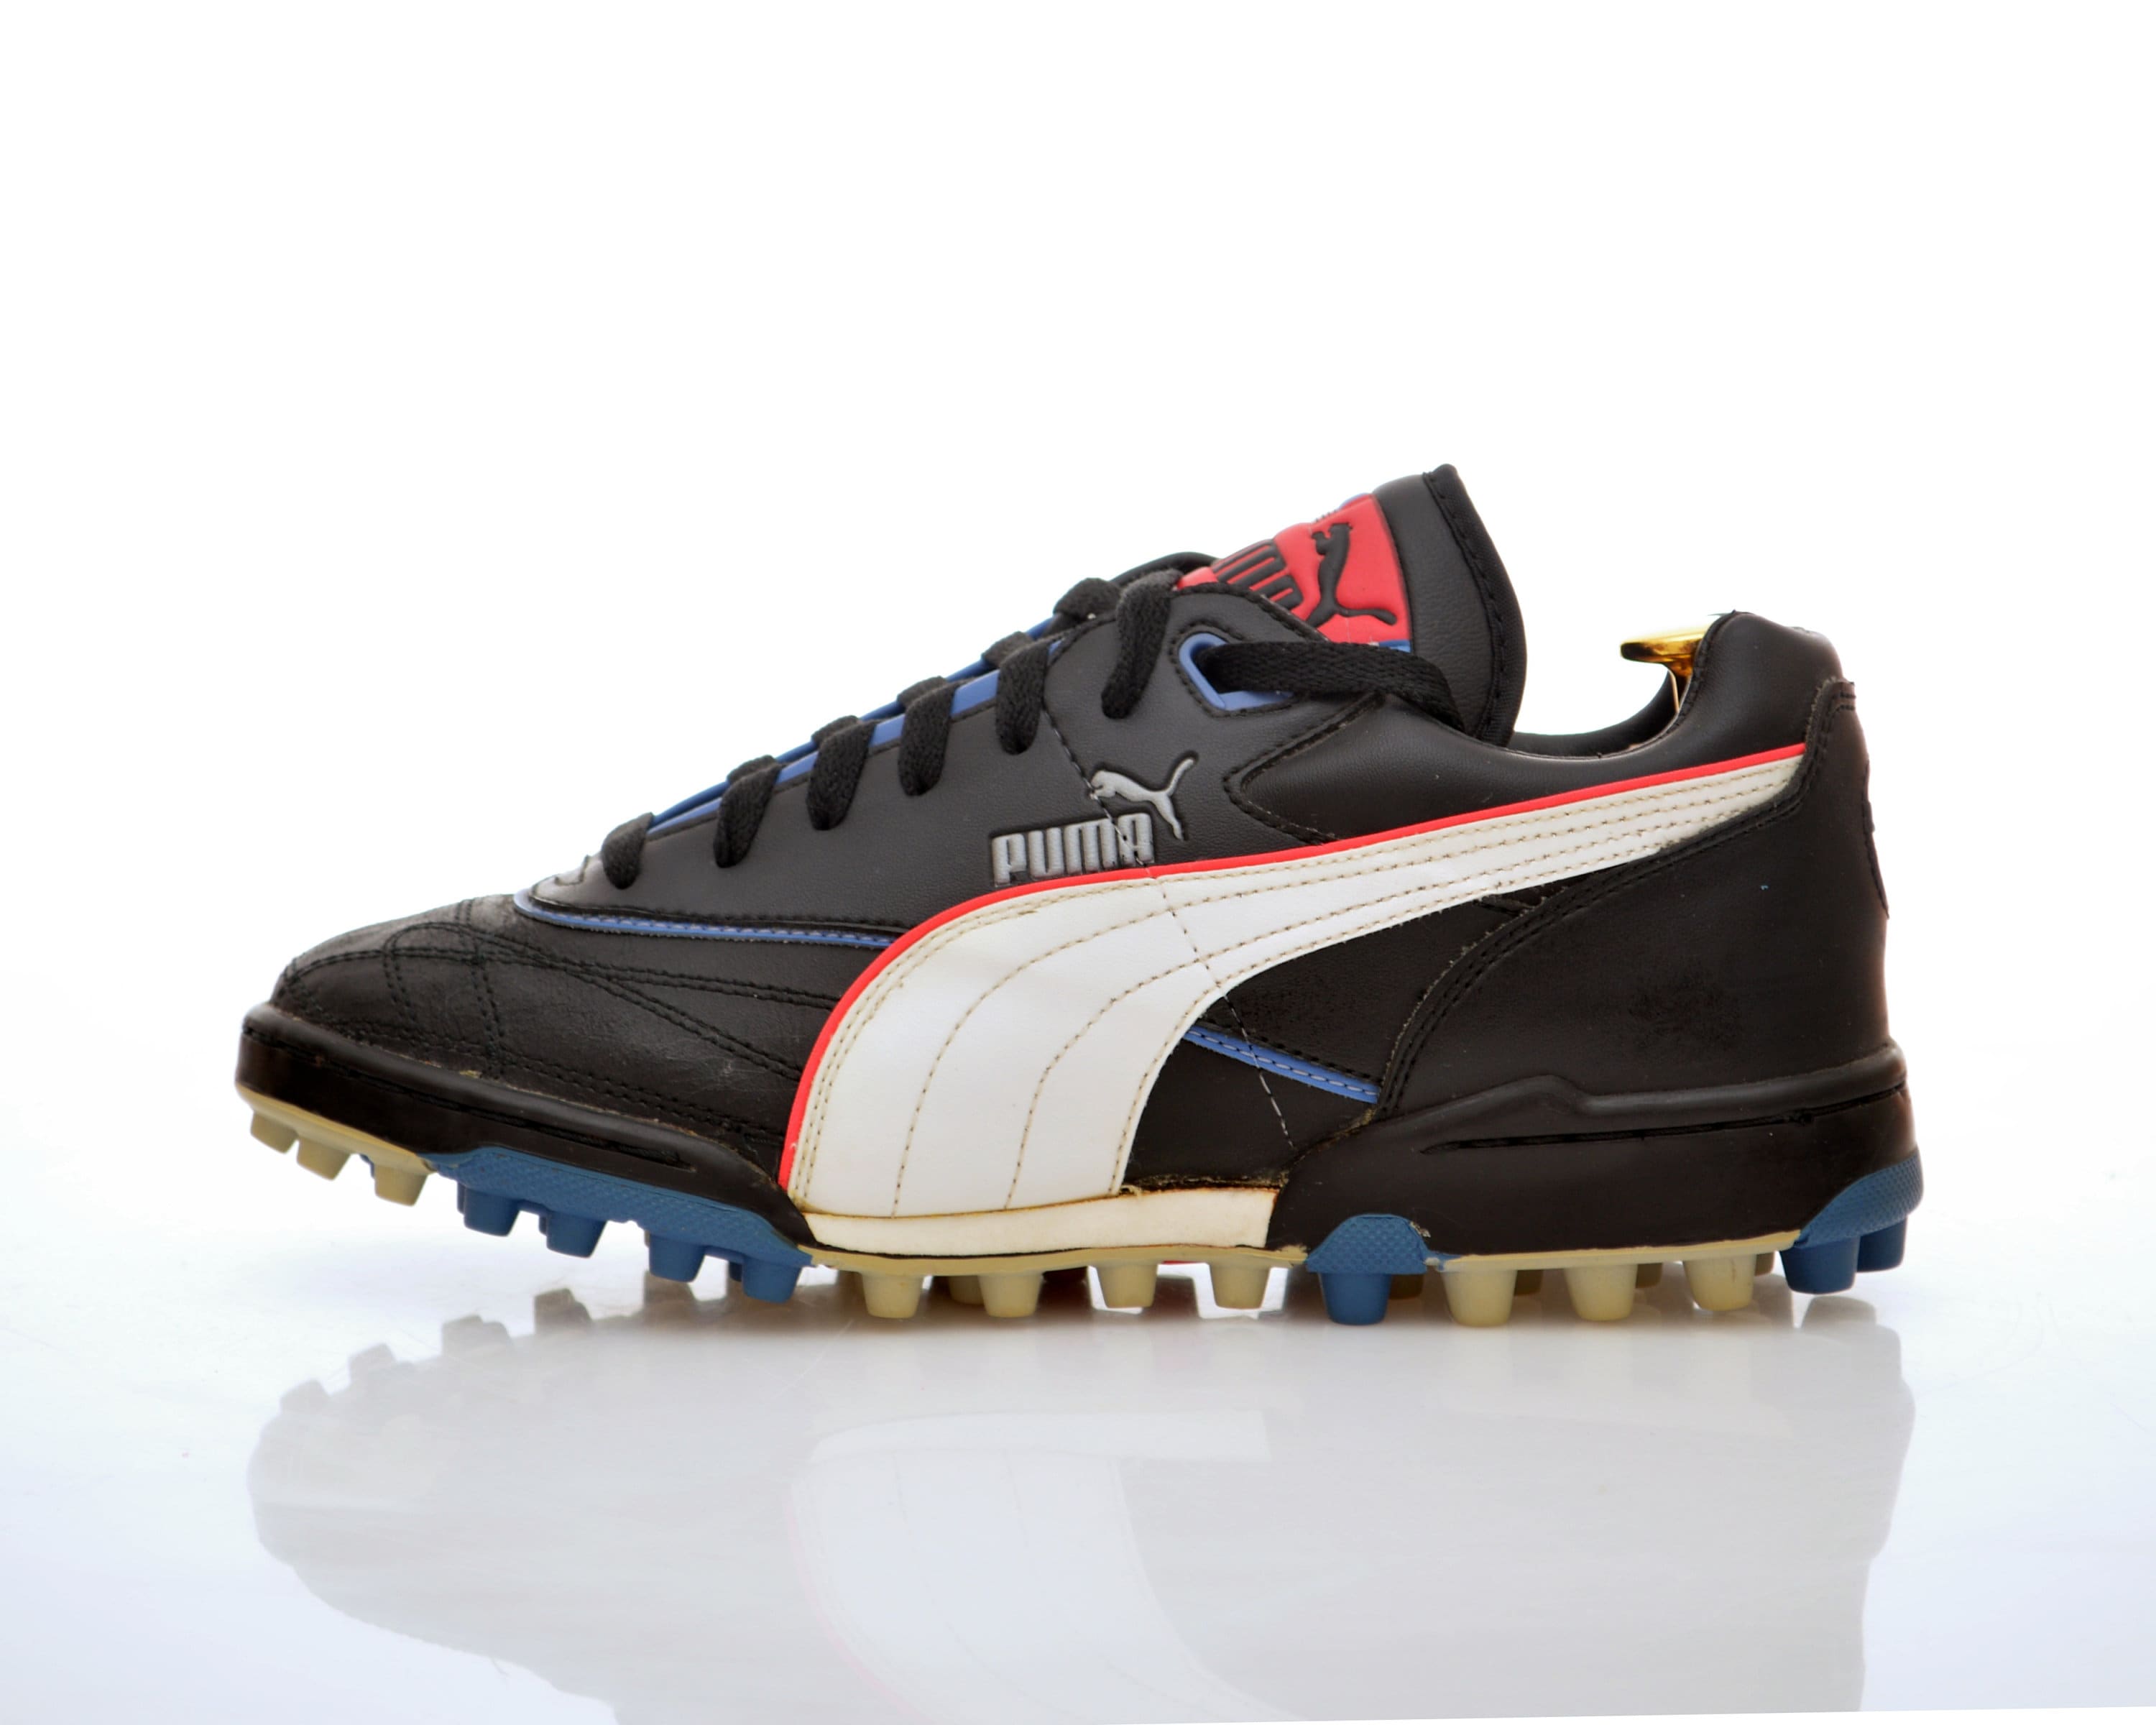 Vintage PUMA Astro Turf Football Boots 